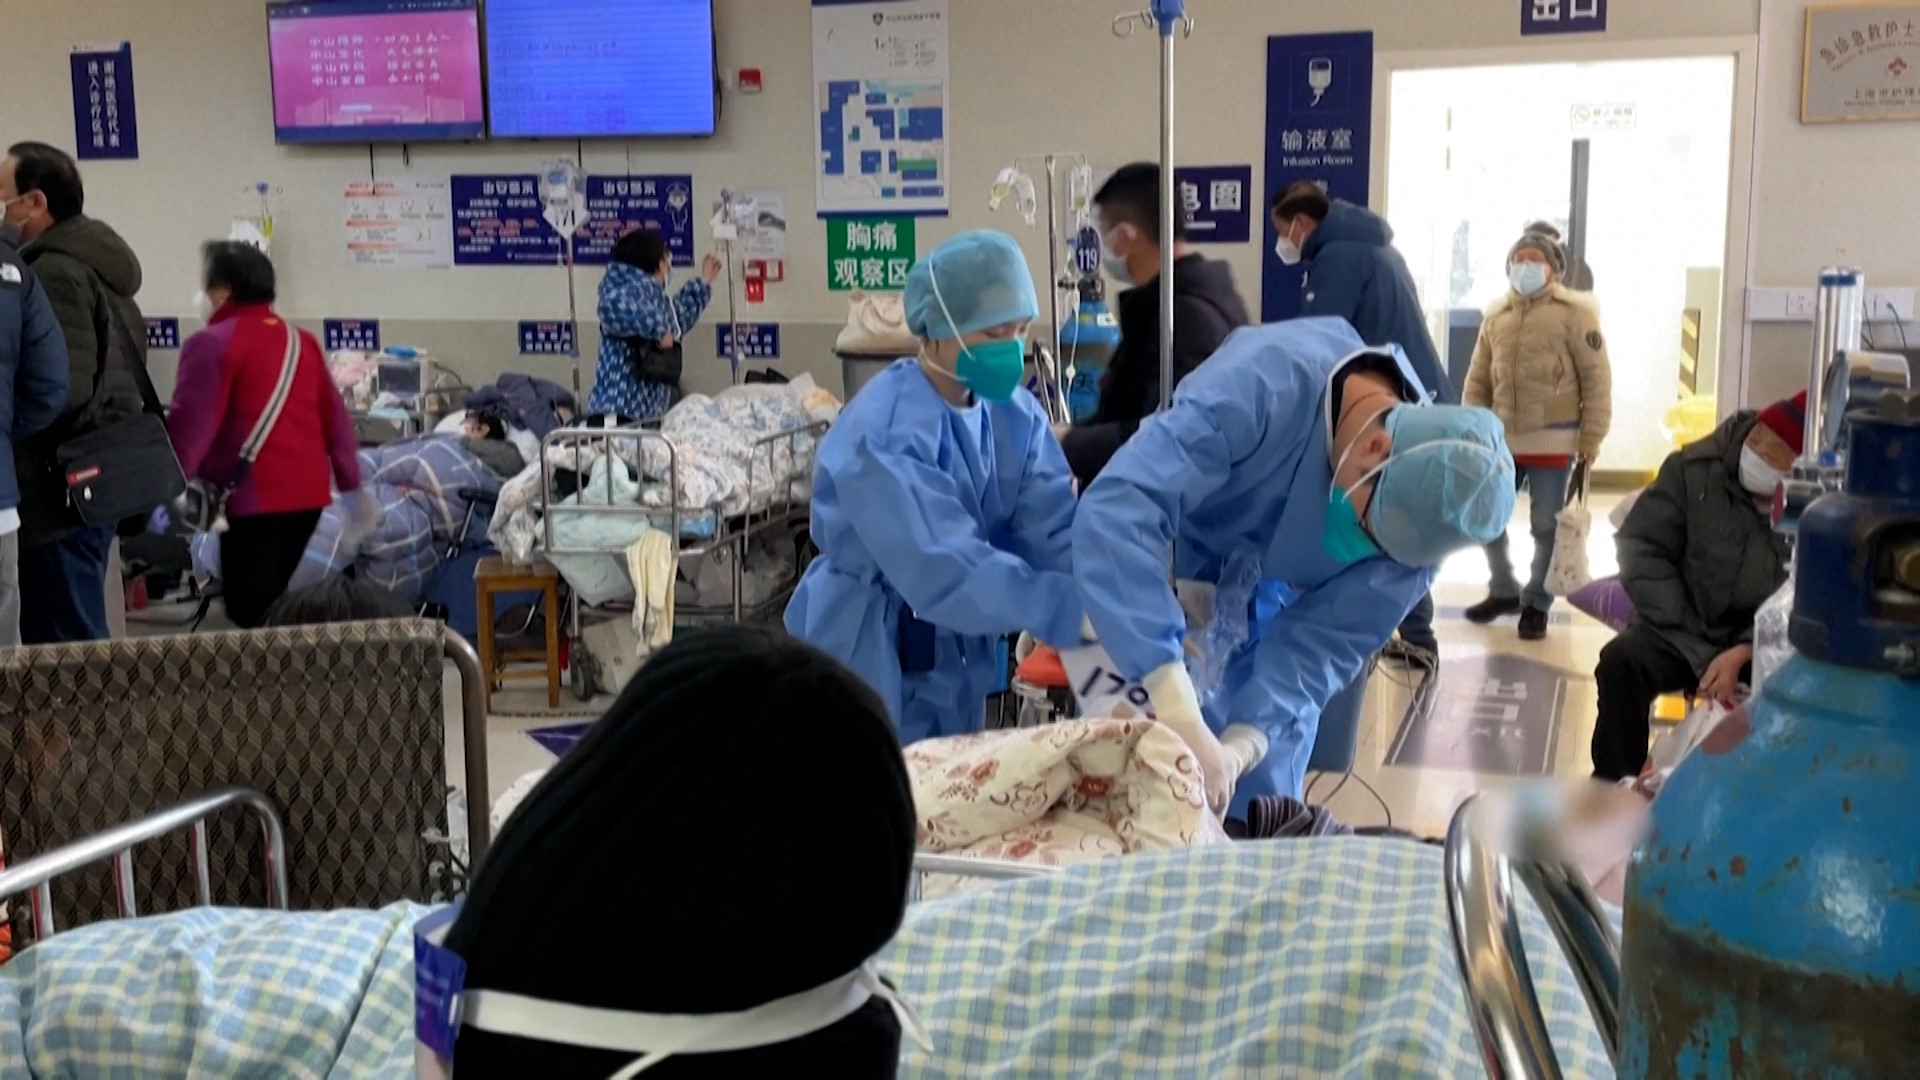 Los médico atienden a un paciente con COVID en medio del caos de un recinto repleto de contagiados por el virus en China 